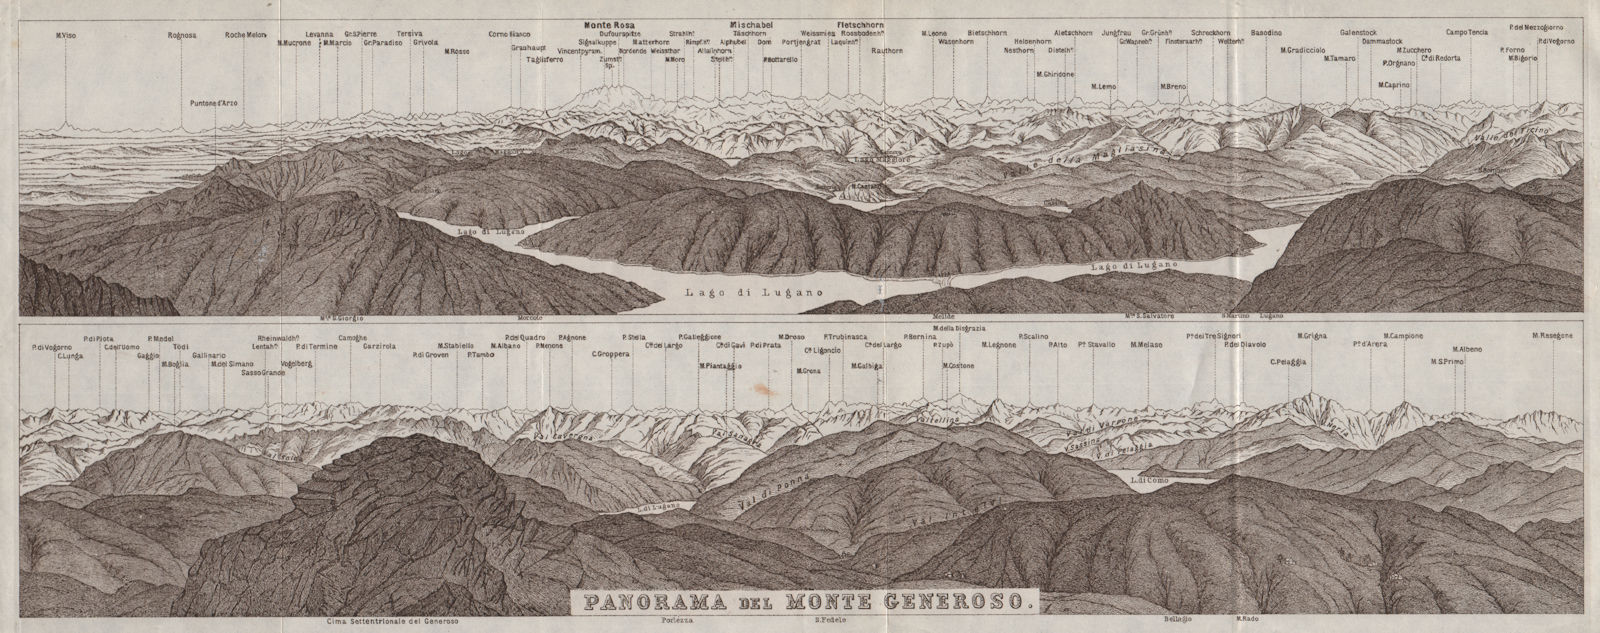 MONTE GENEROSO PANORAMA. Lugano Como Maggiore Rosa Mischabel Disgrazia 1928 map